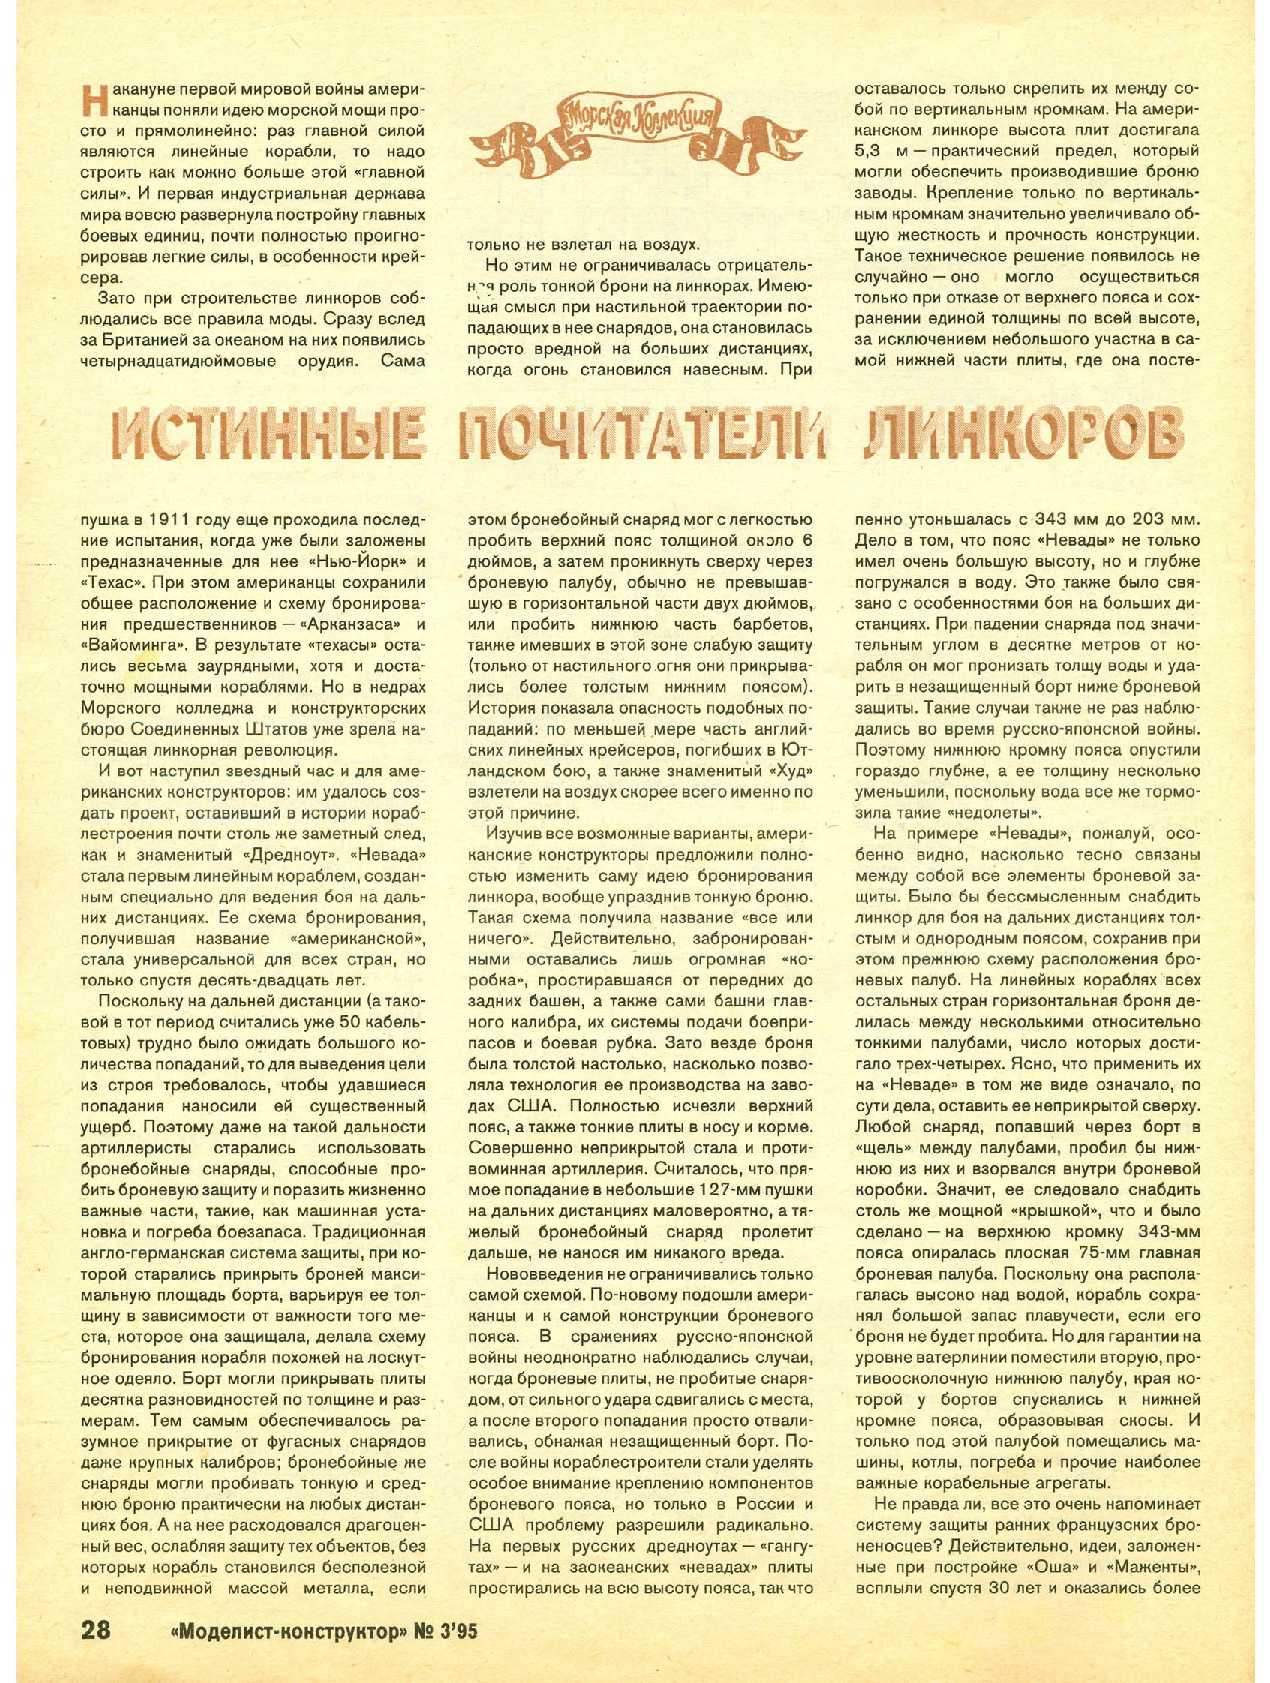 МК 3, 1995, 28 c.